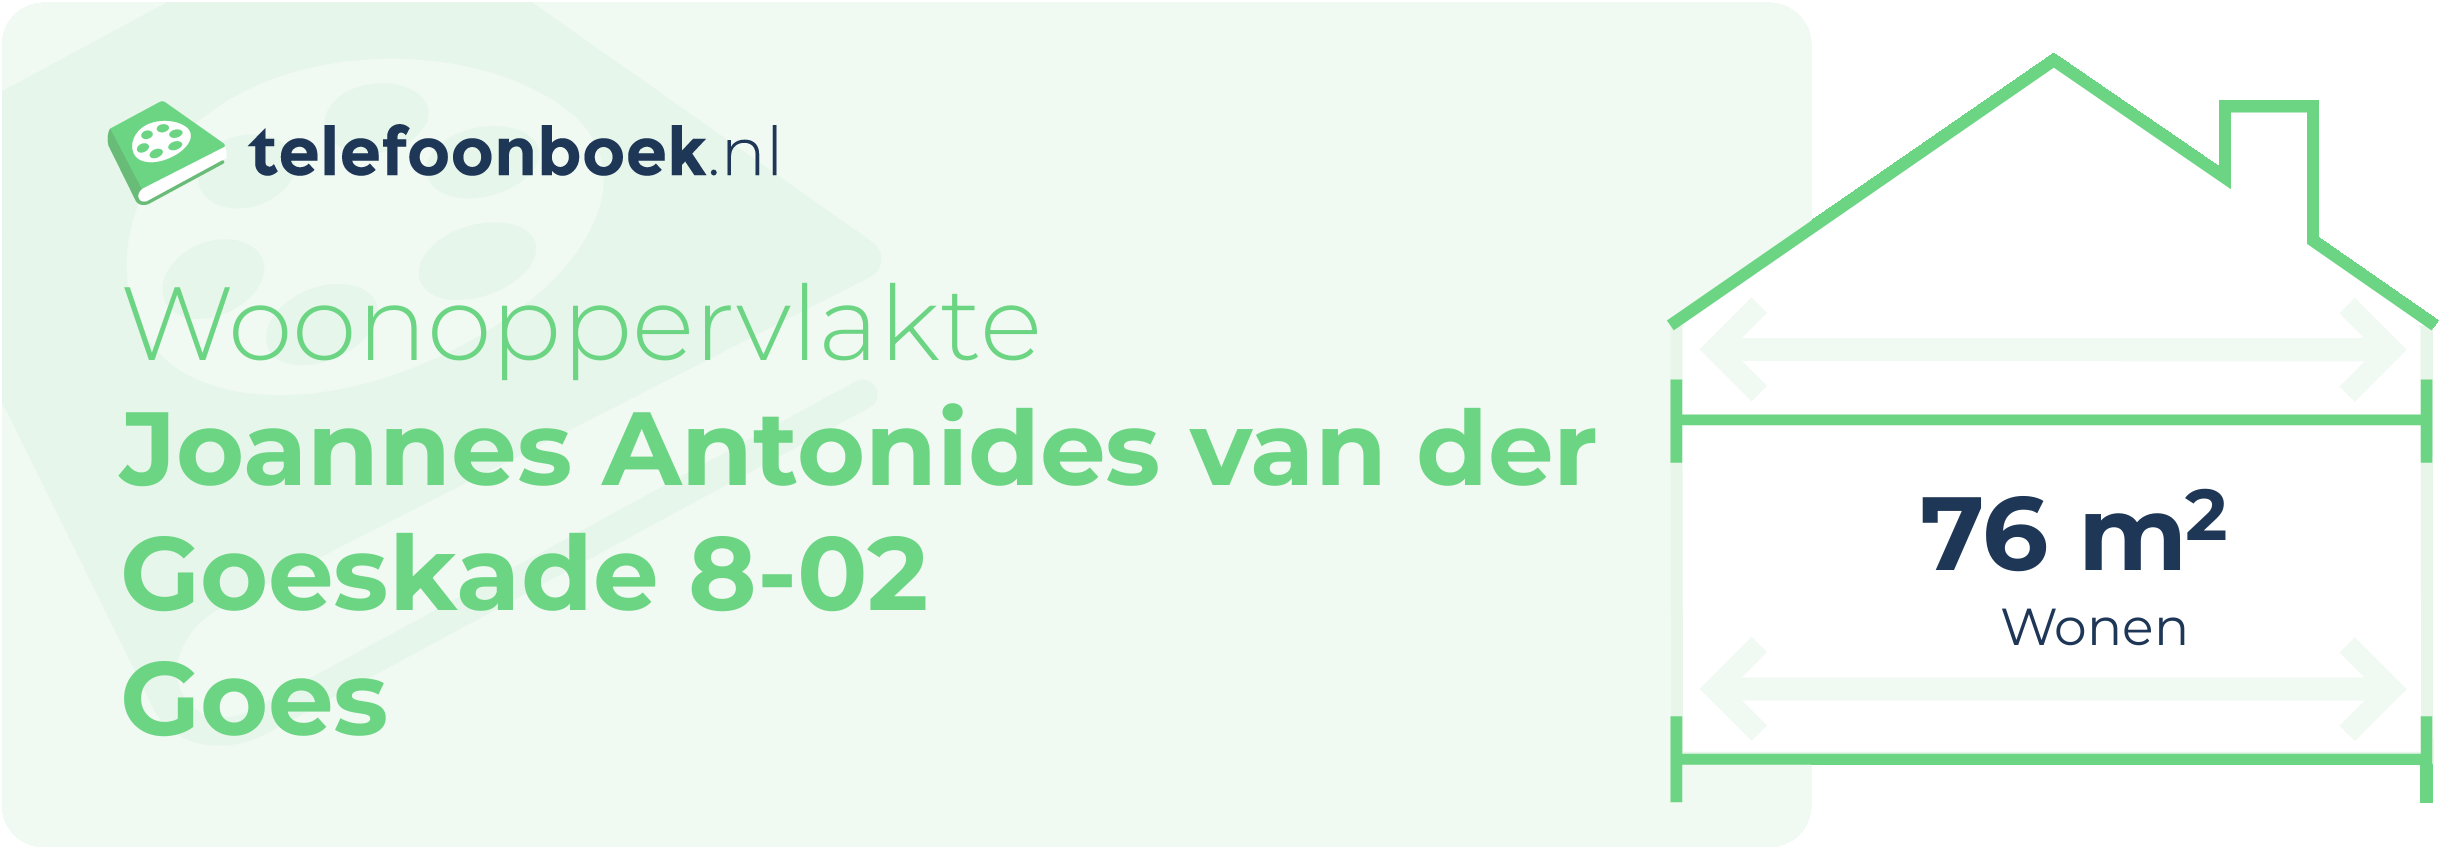 Woonoppervlakte Joannes Antonides Van Der Goeskade 8-02 Goes